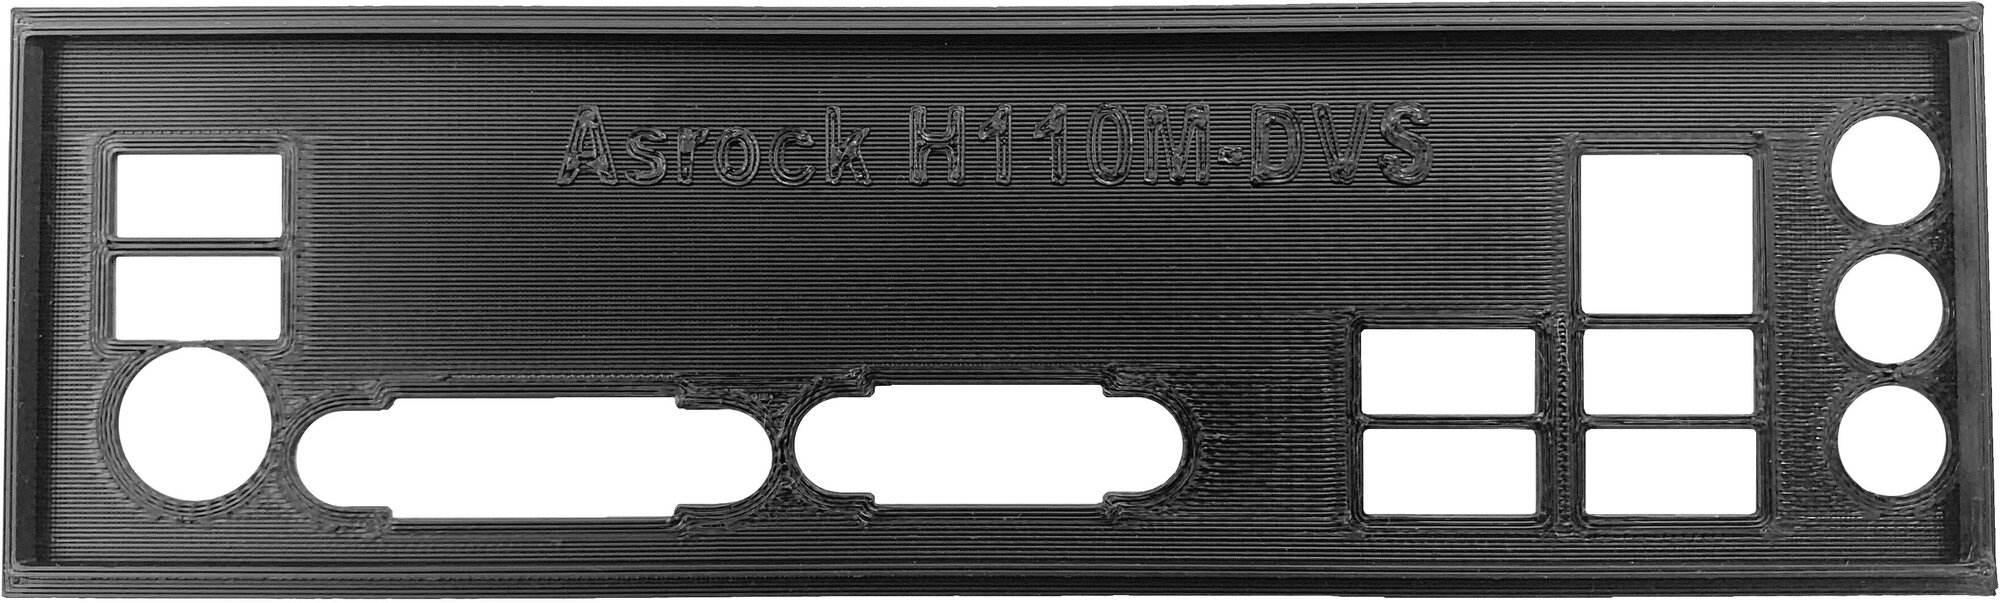 Заглушка для компьютерного корпуса к материнской плате Asrock H110M-DVS, цвет черный